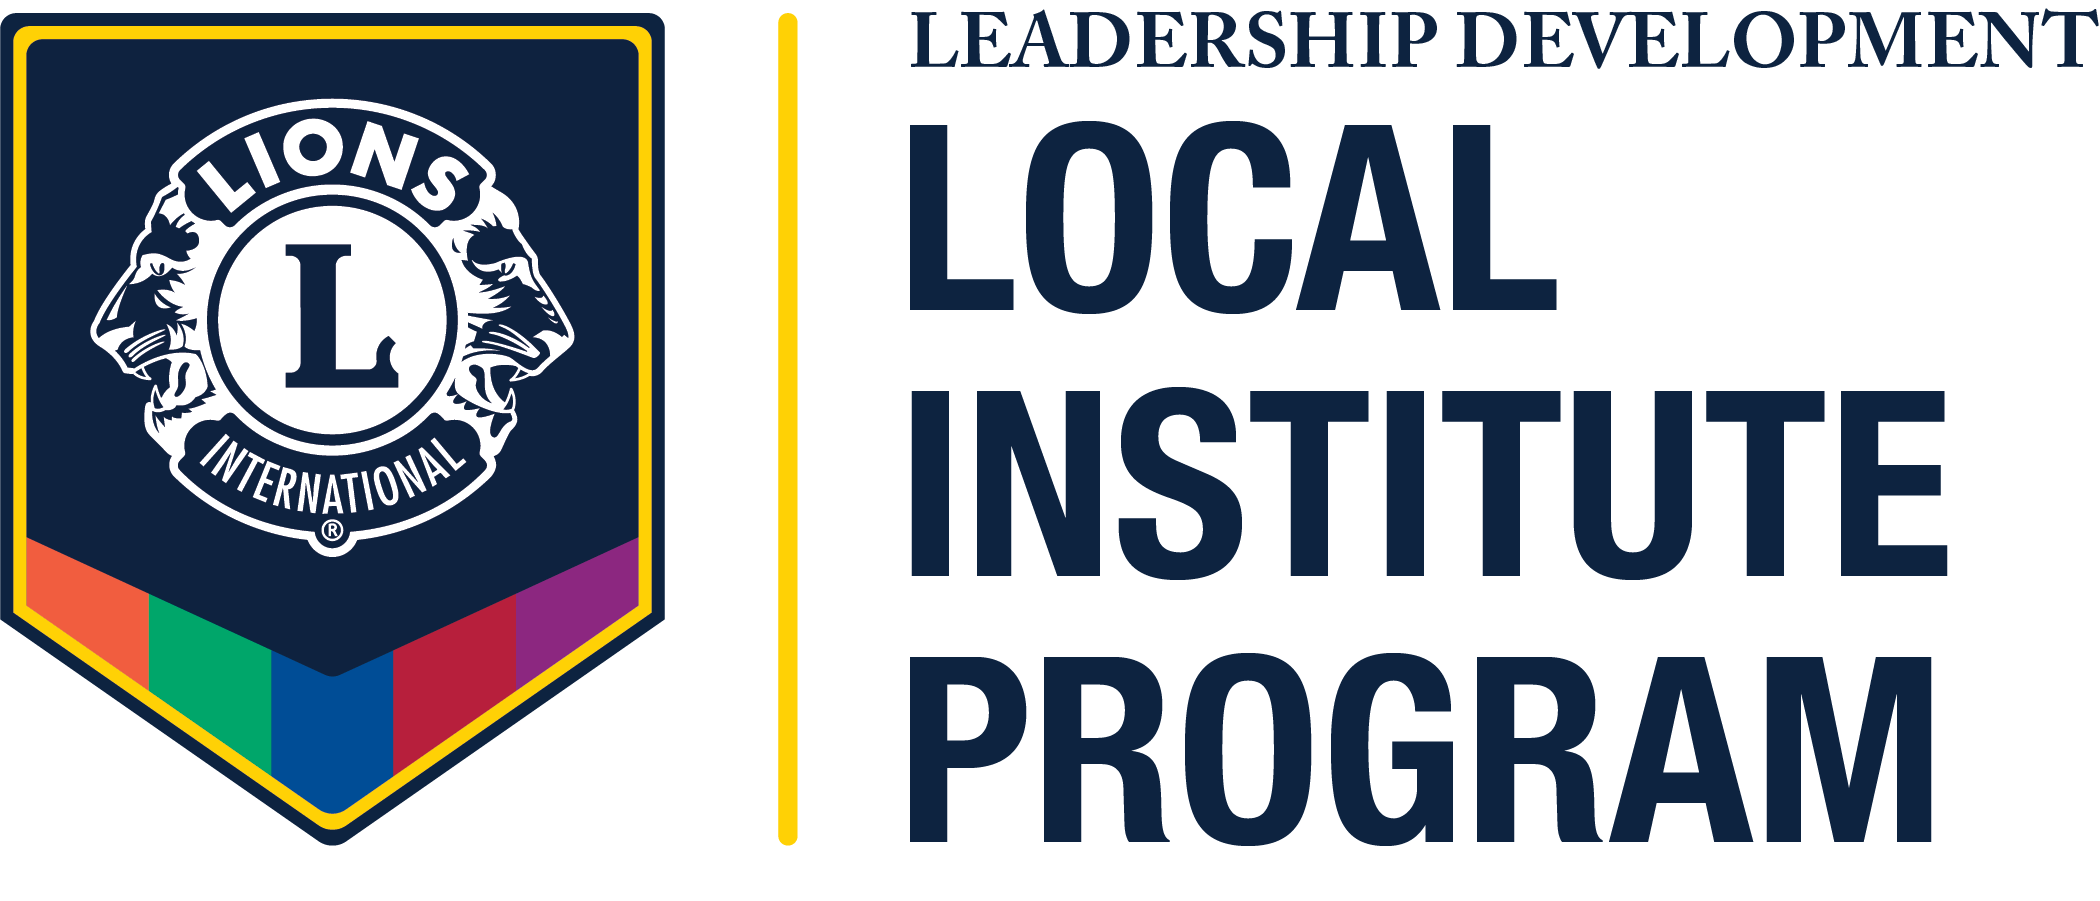 Leadership Development Institutes